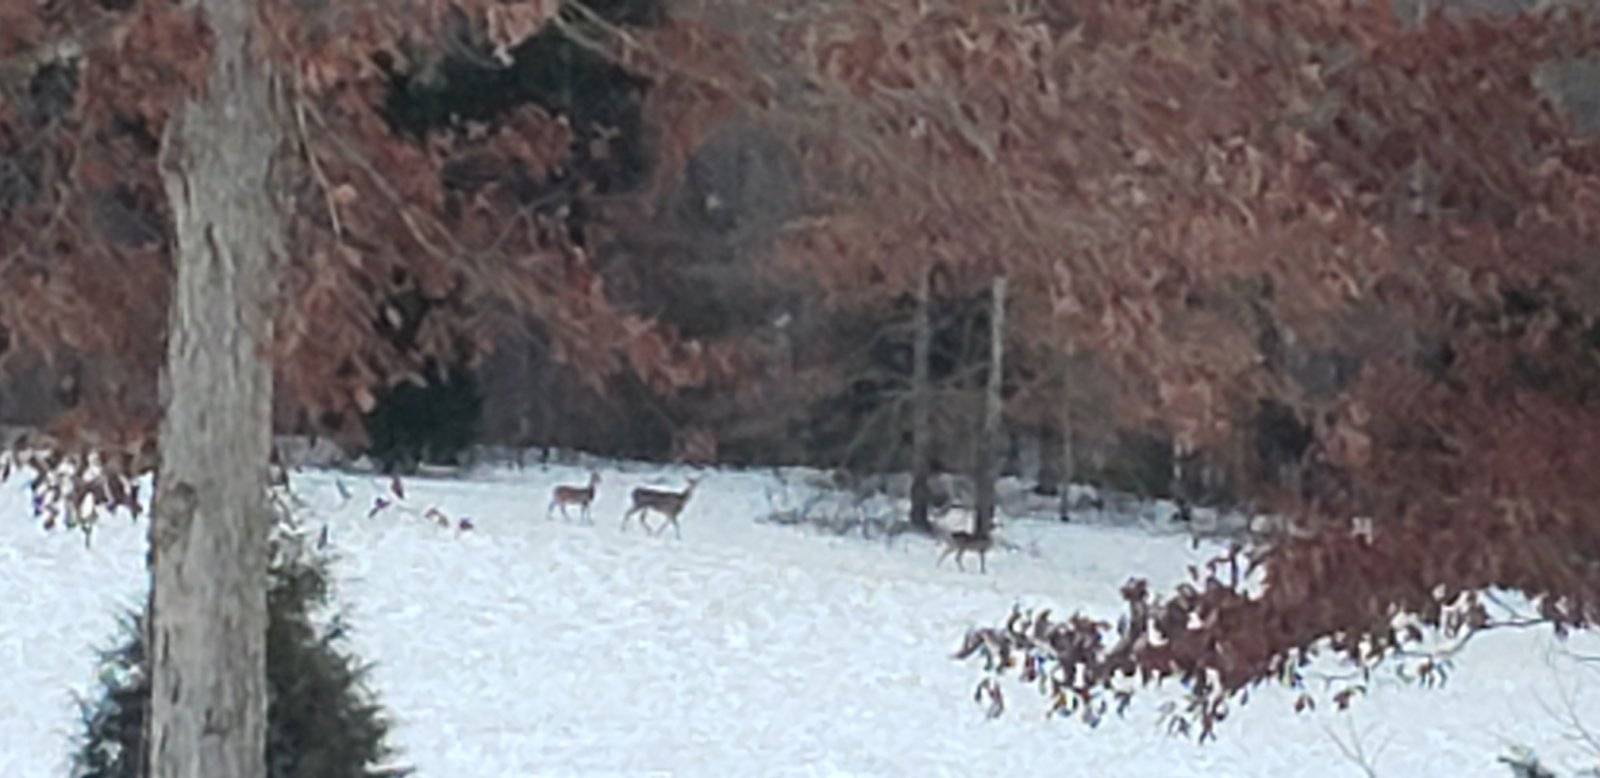 Deer Christmas Eve in the Valley 001.jpeg